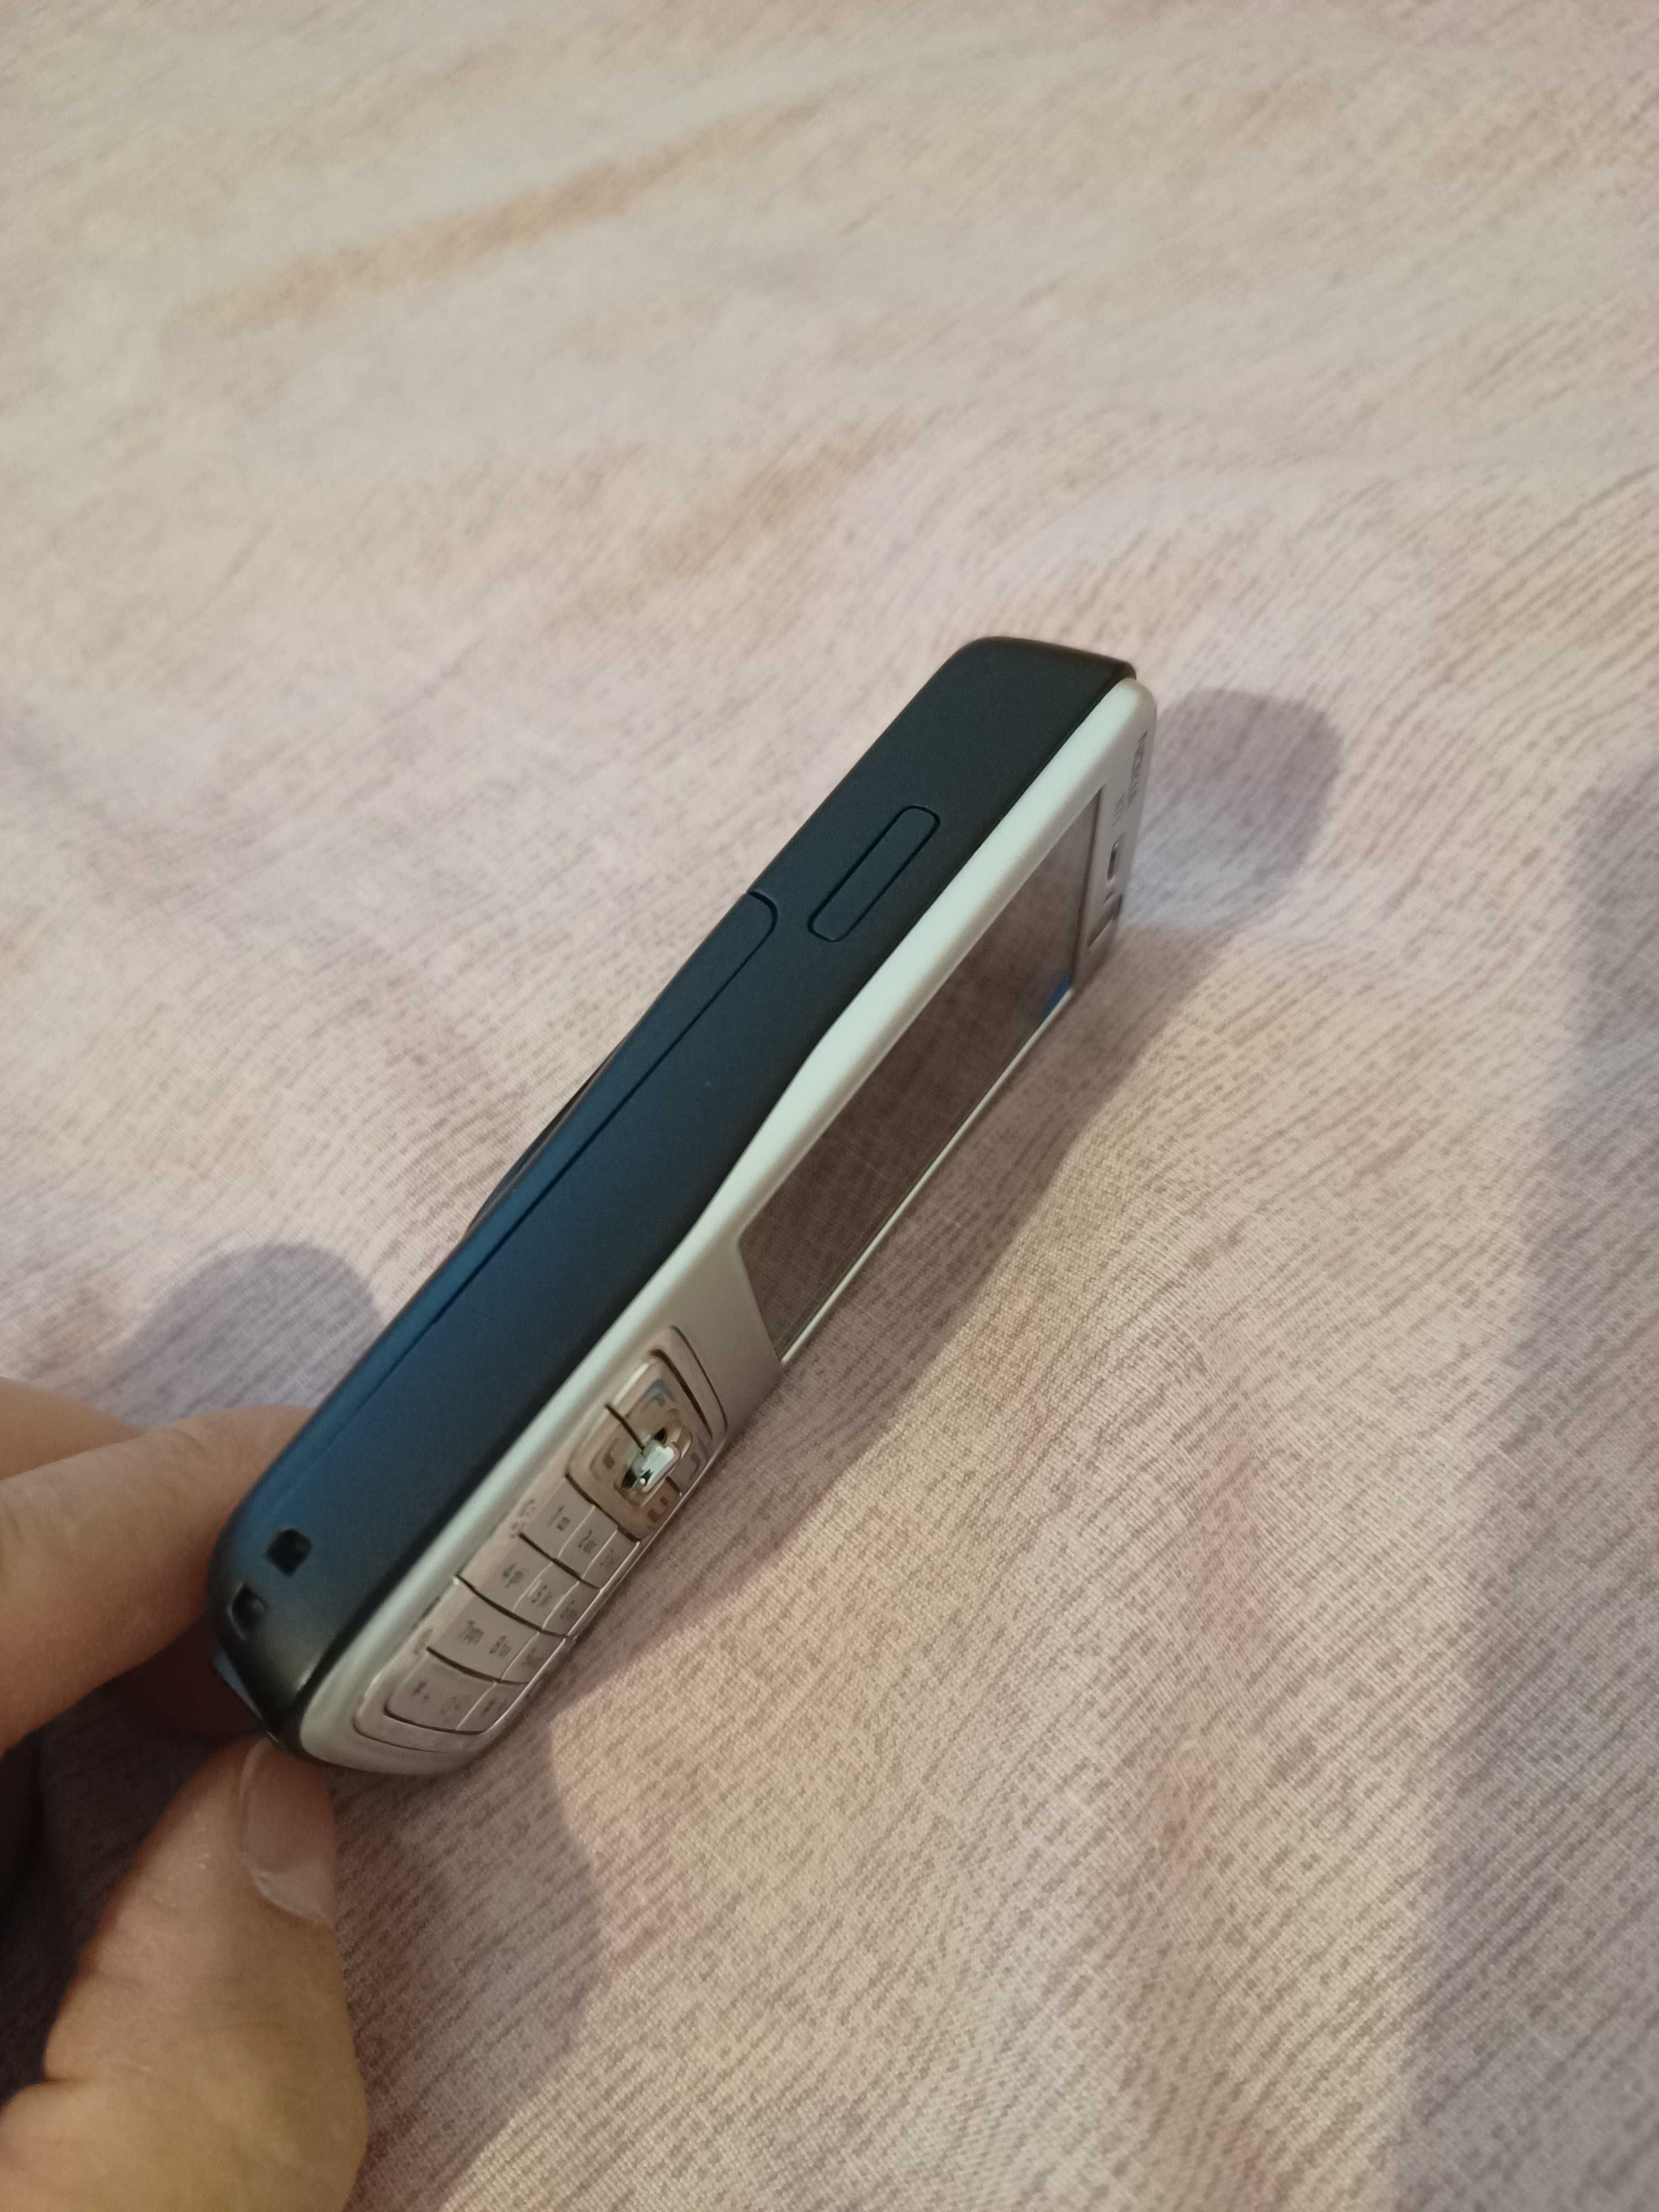 Nokia N73 (със оригинална батерия)